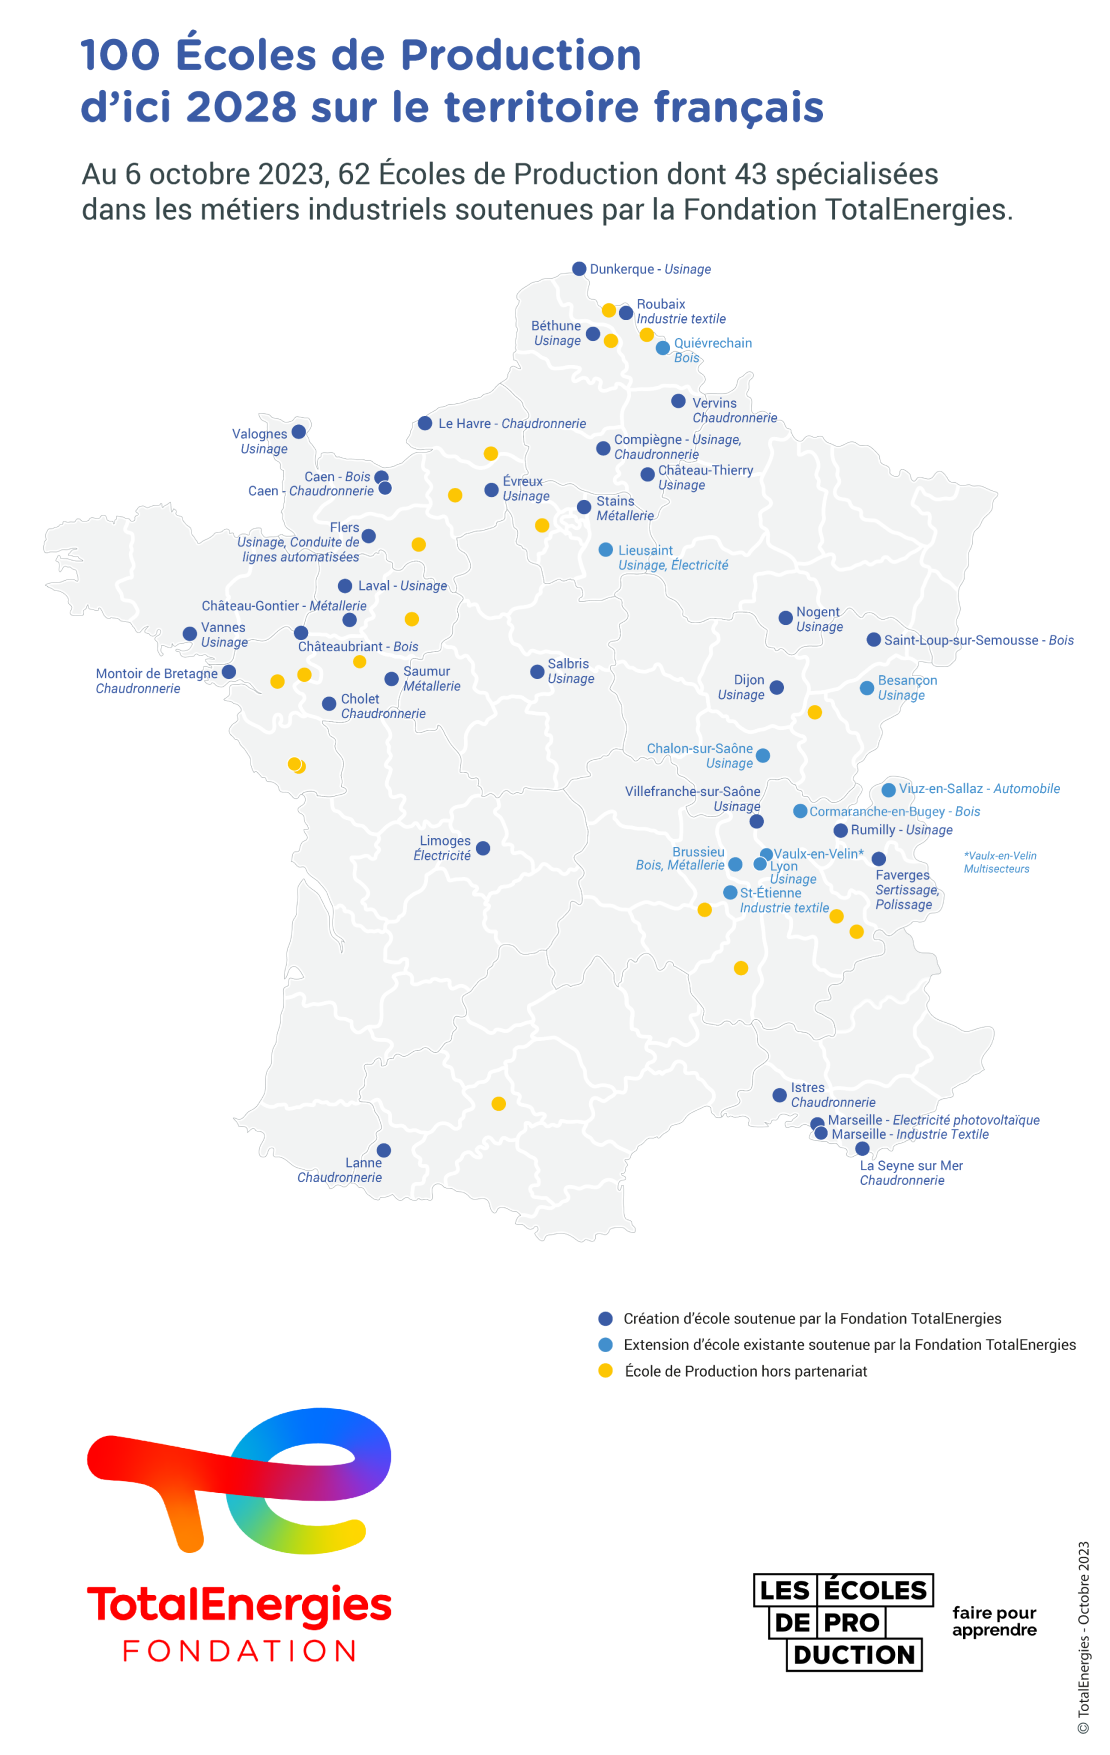 Carte "100 Écoles de Production d'ici 2028 sur le territoire français" - Voir description détaillée ci-après